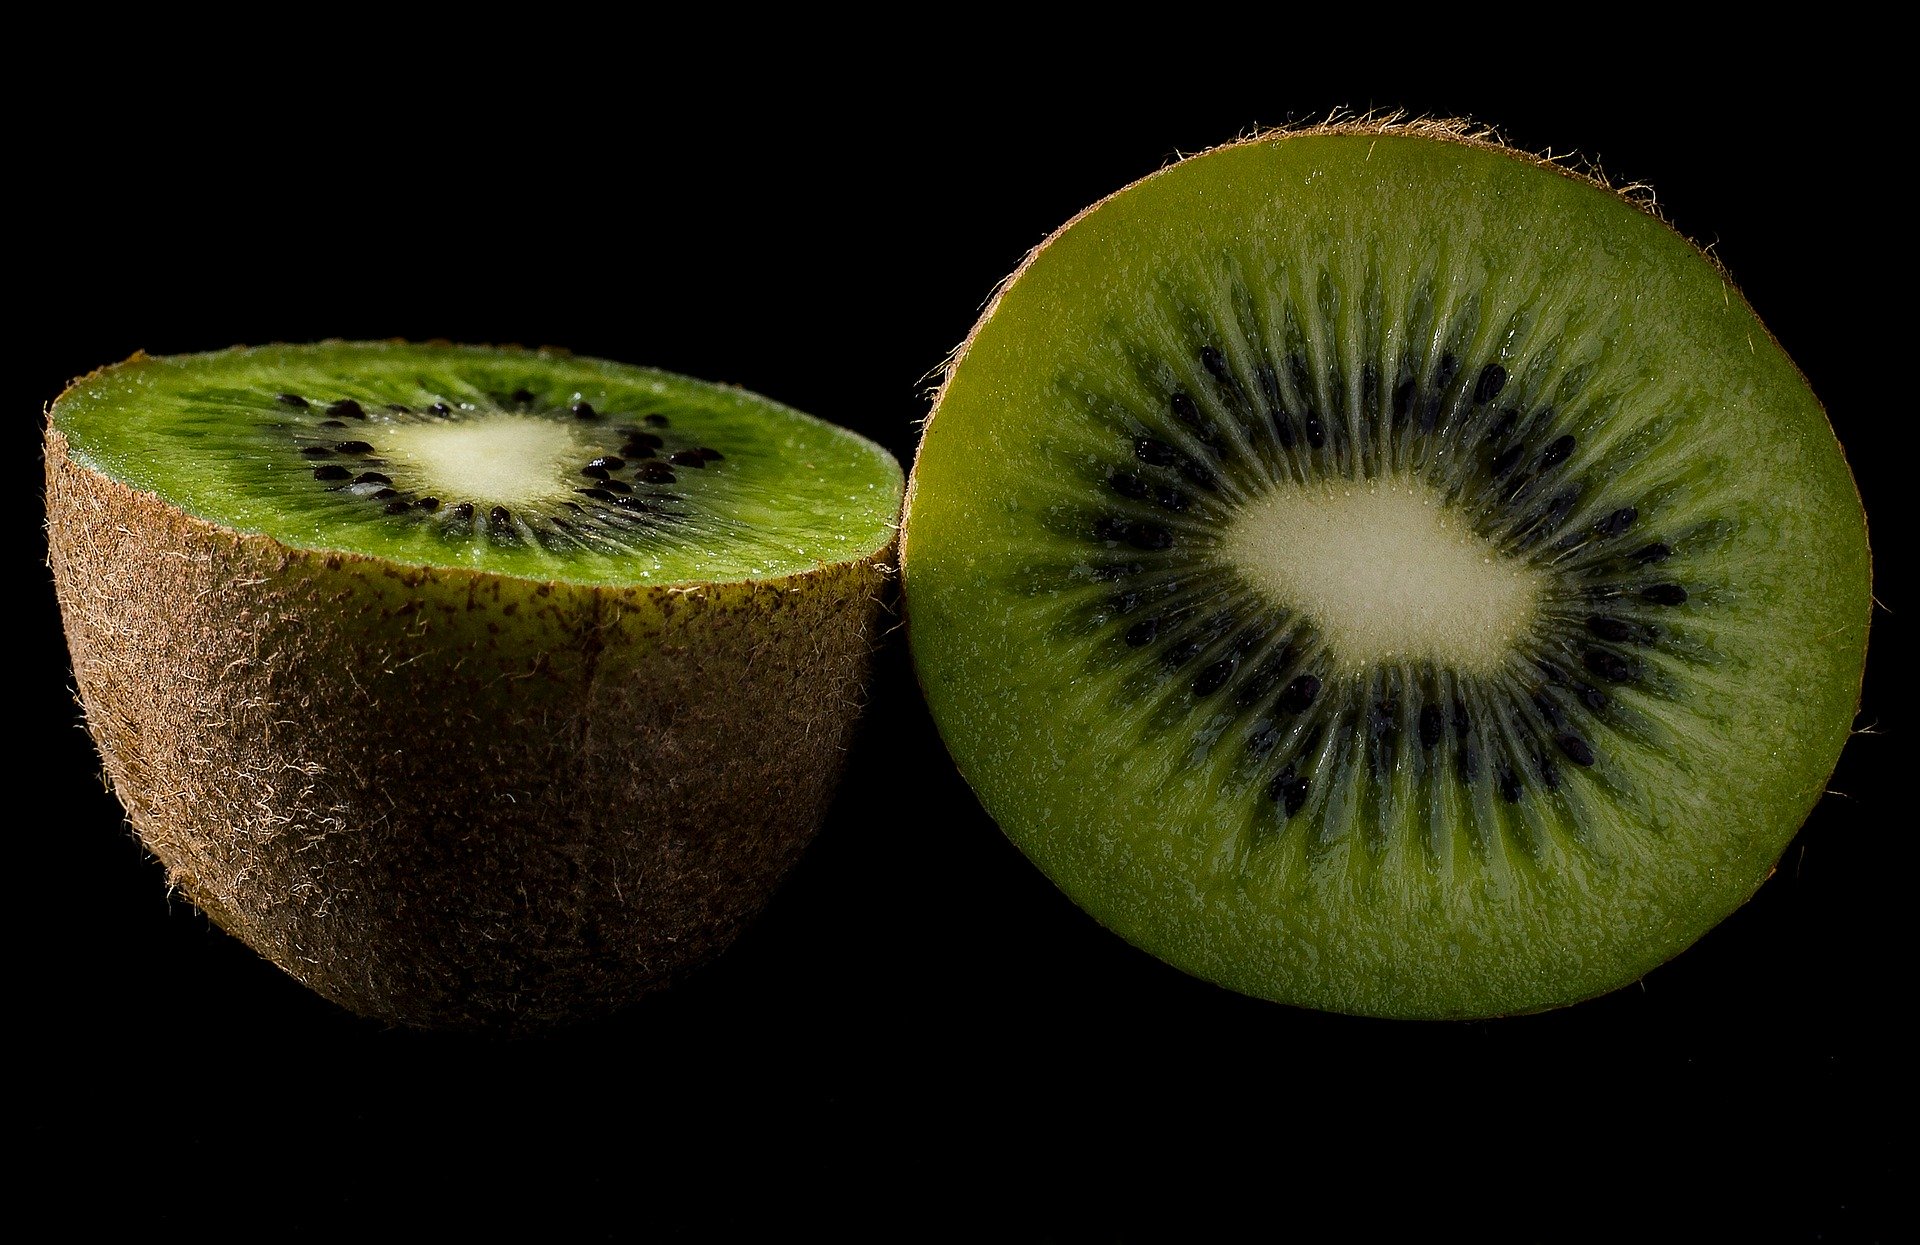 Perchè mangiare i kiwi con la buccia? Ecco il motivo! 